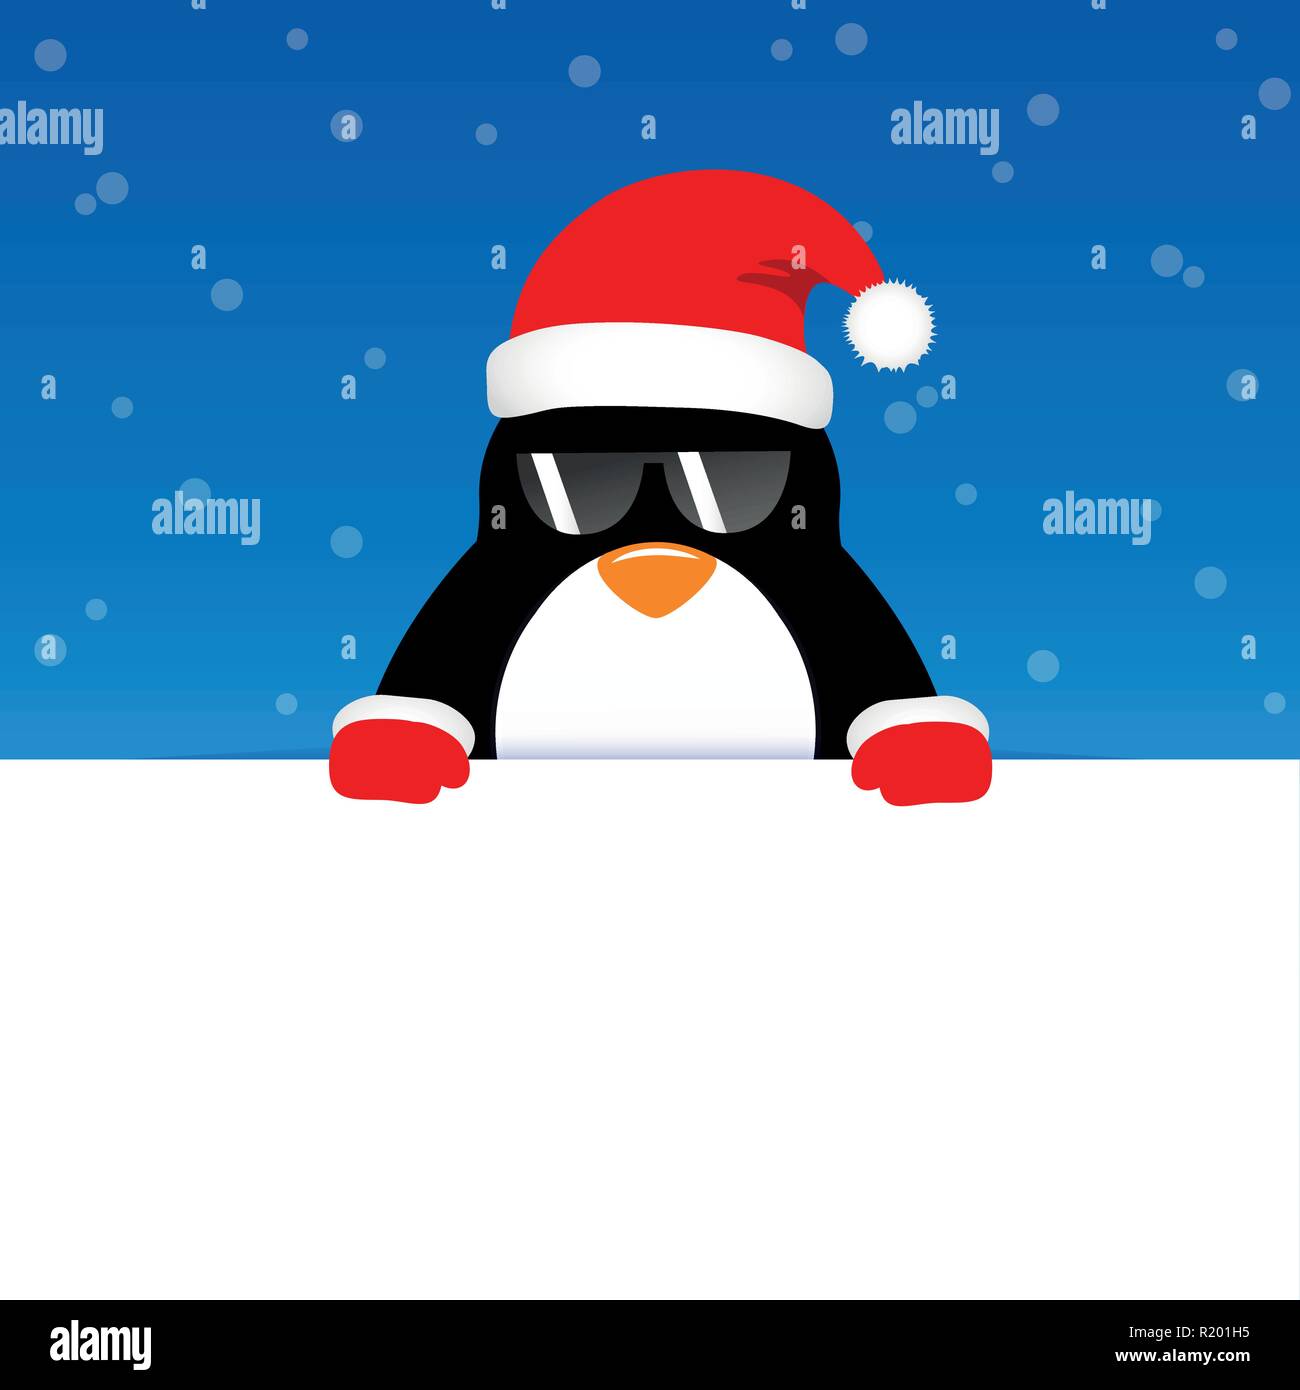 Happy niedlichen Pinguin mit Sonnenbrille auf Blau snowy Hintergrund Vektor-illustration EPS 10. Stock Vektor